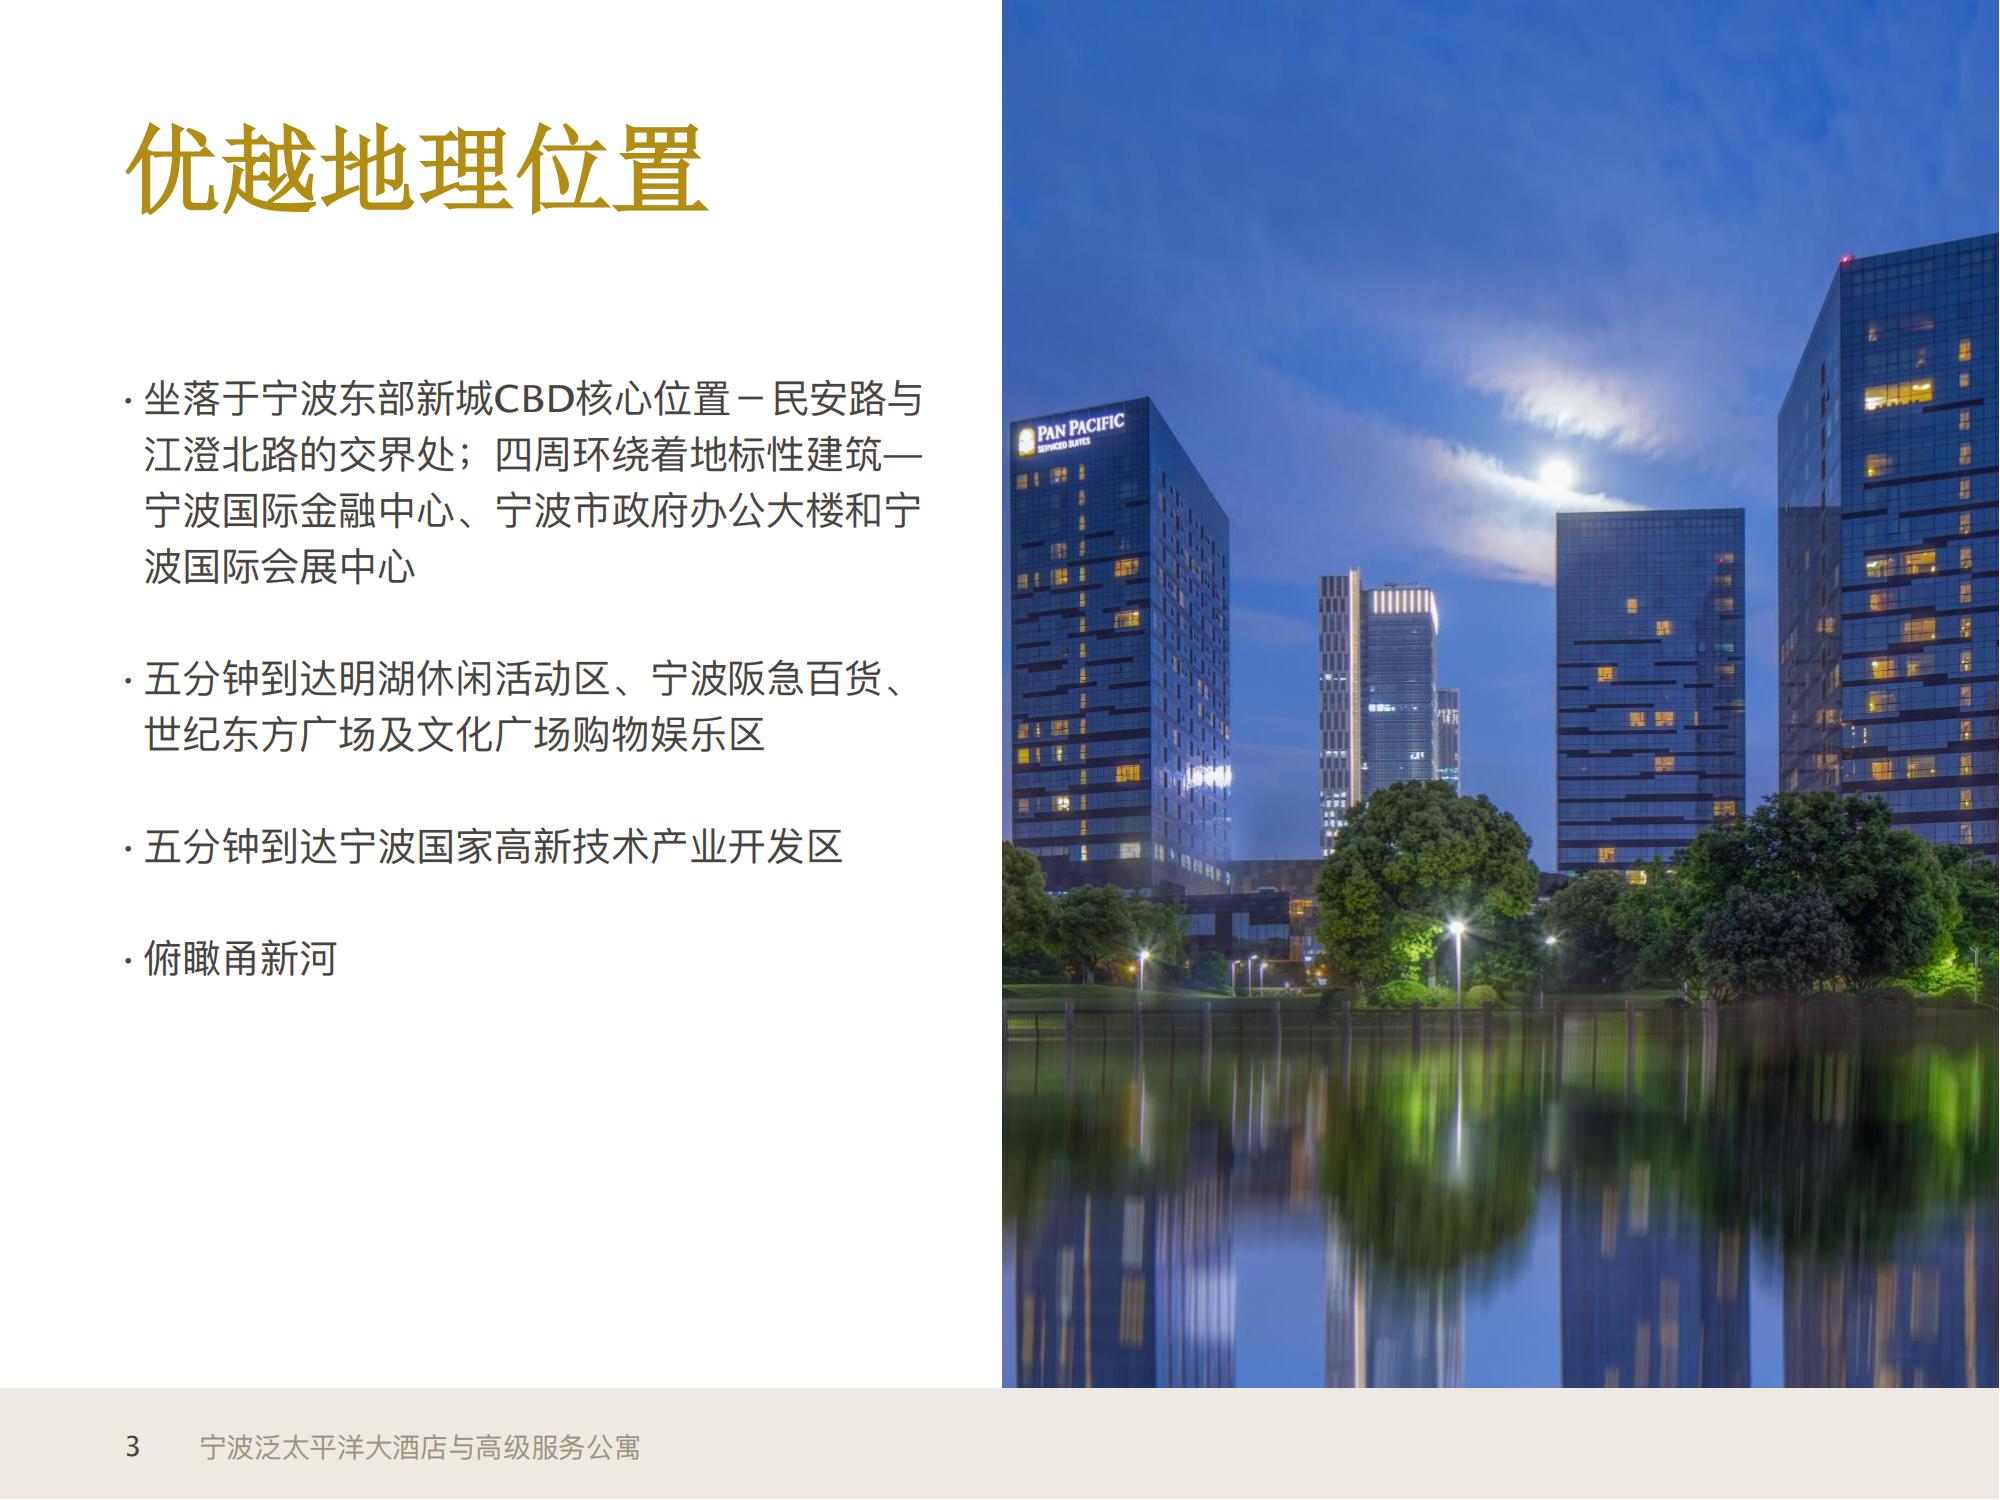 1_宁波泛太平洋大酒店与高级服务公寓信息展示+宁波热门景点20211223_02.jpg